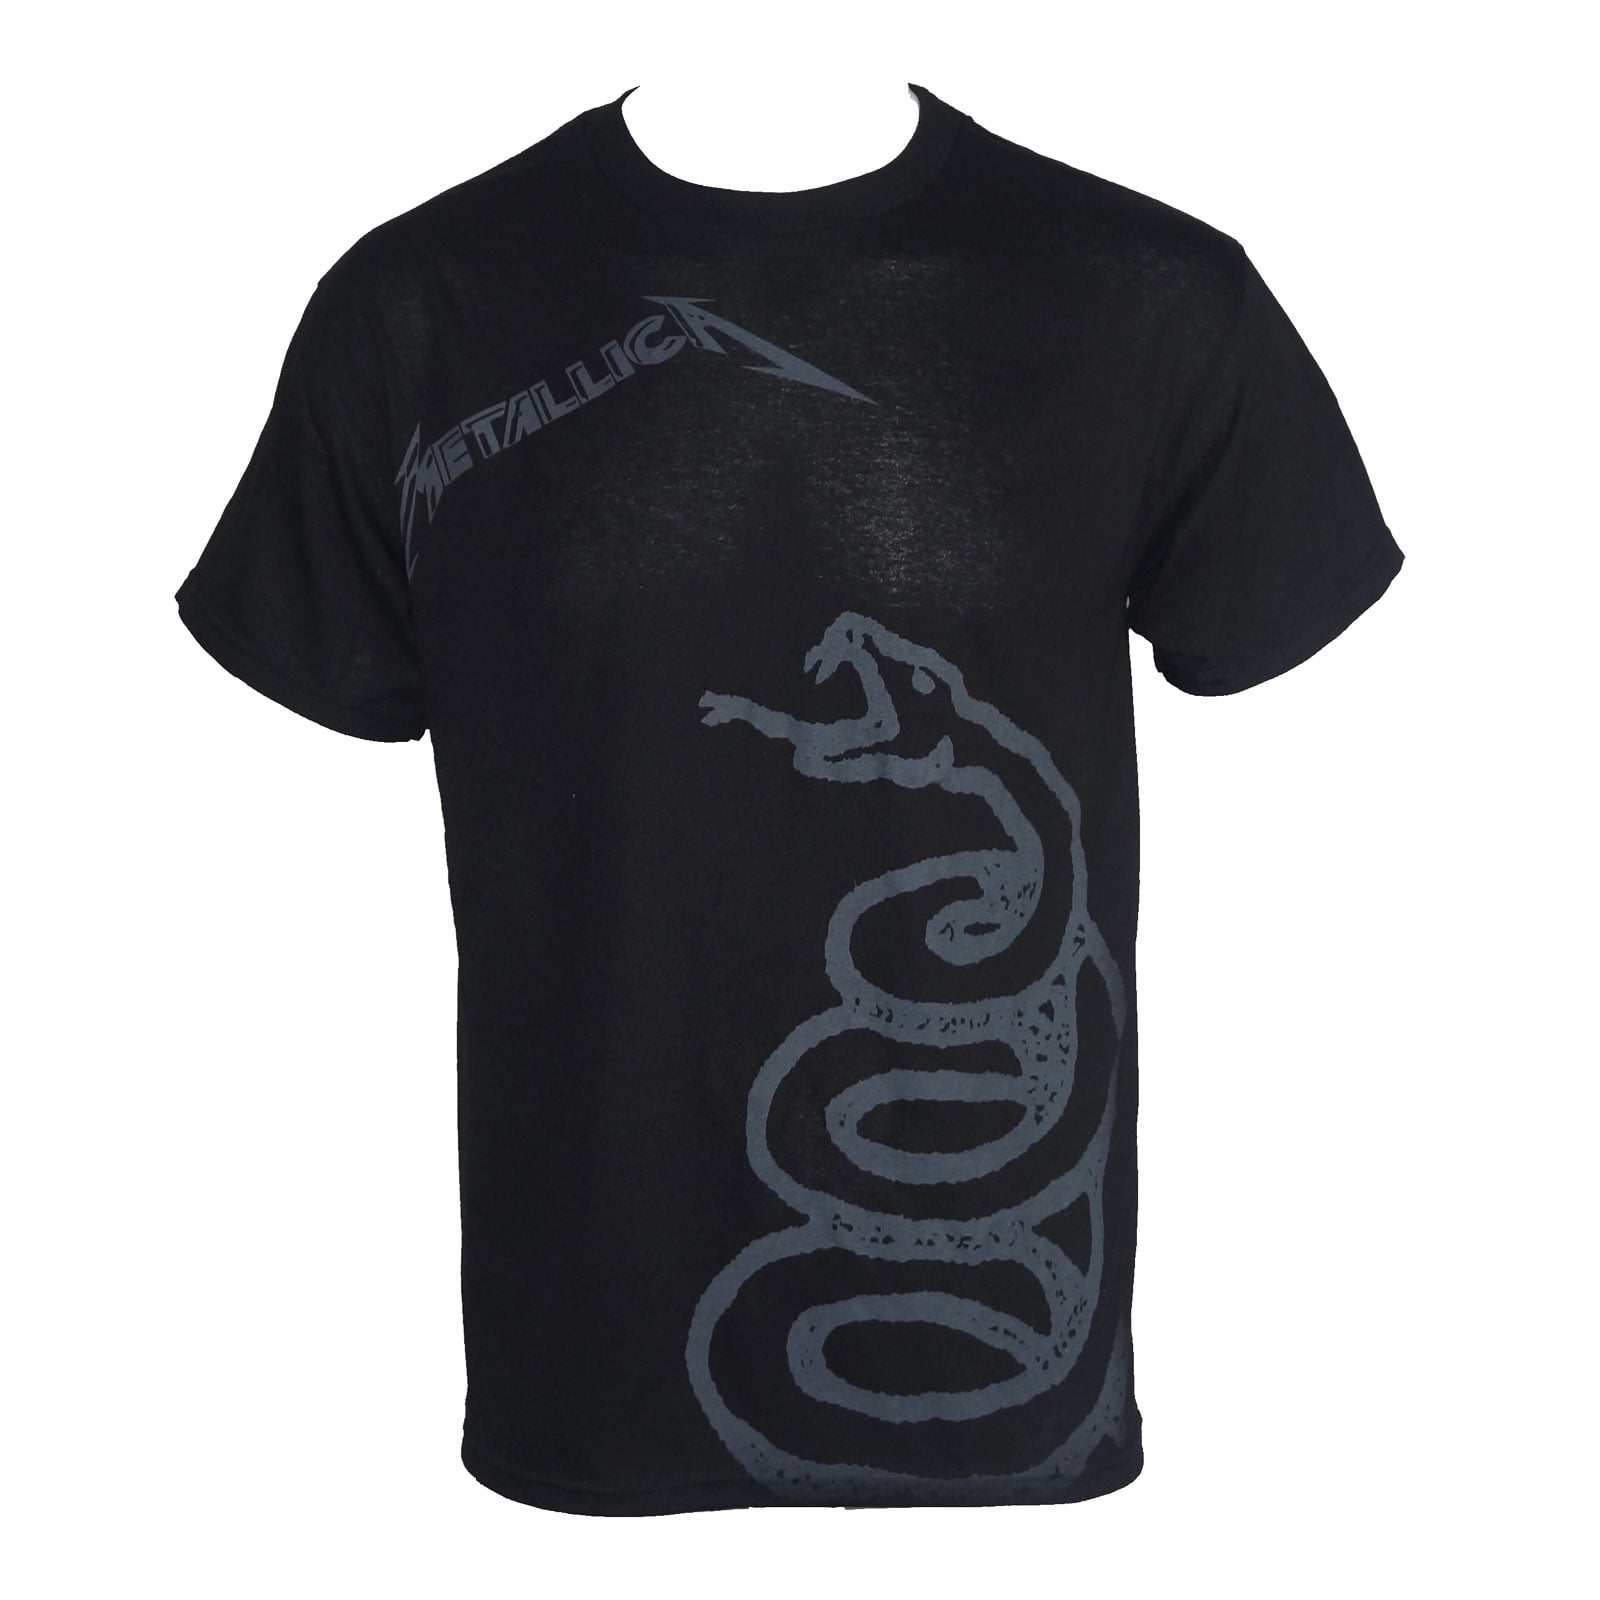 Bravado - METALLICA Black Snake Logo Album Cover T-Shirt - Walmart.com ...